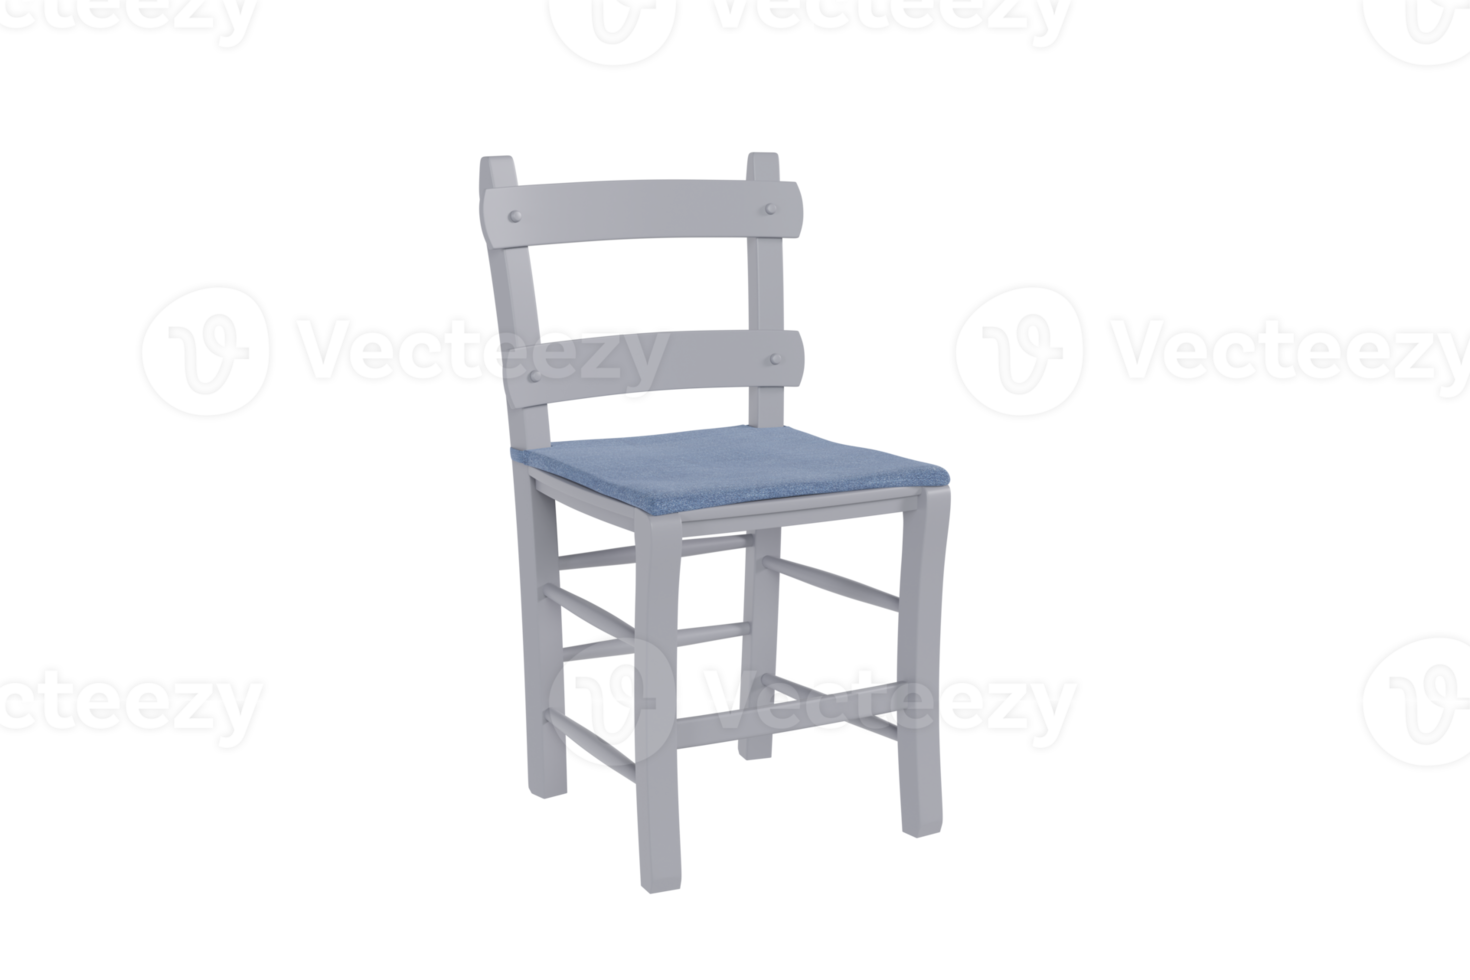 fauteuil créé à partir d'un programme 3d png